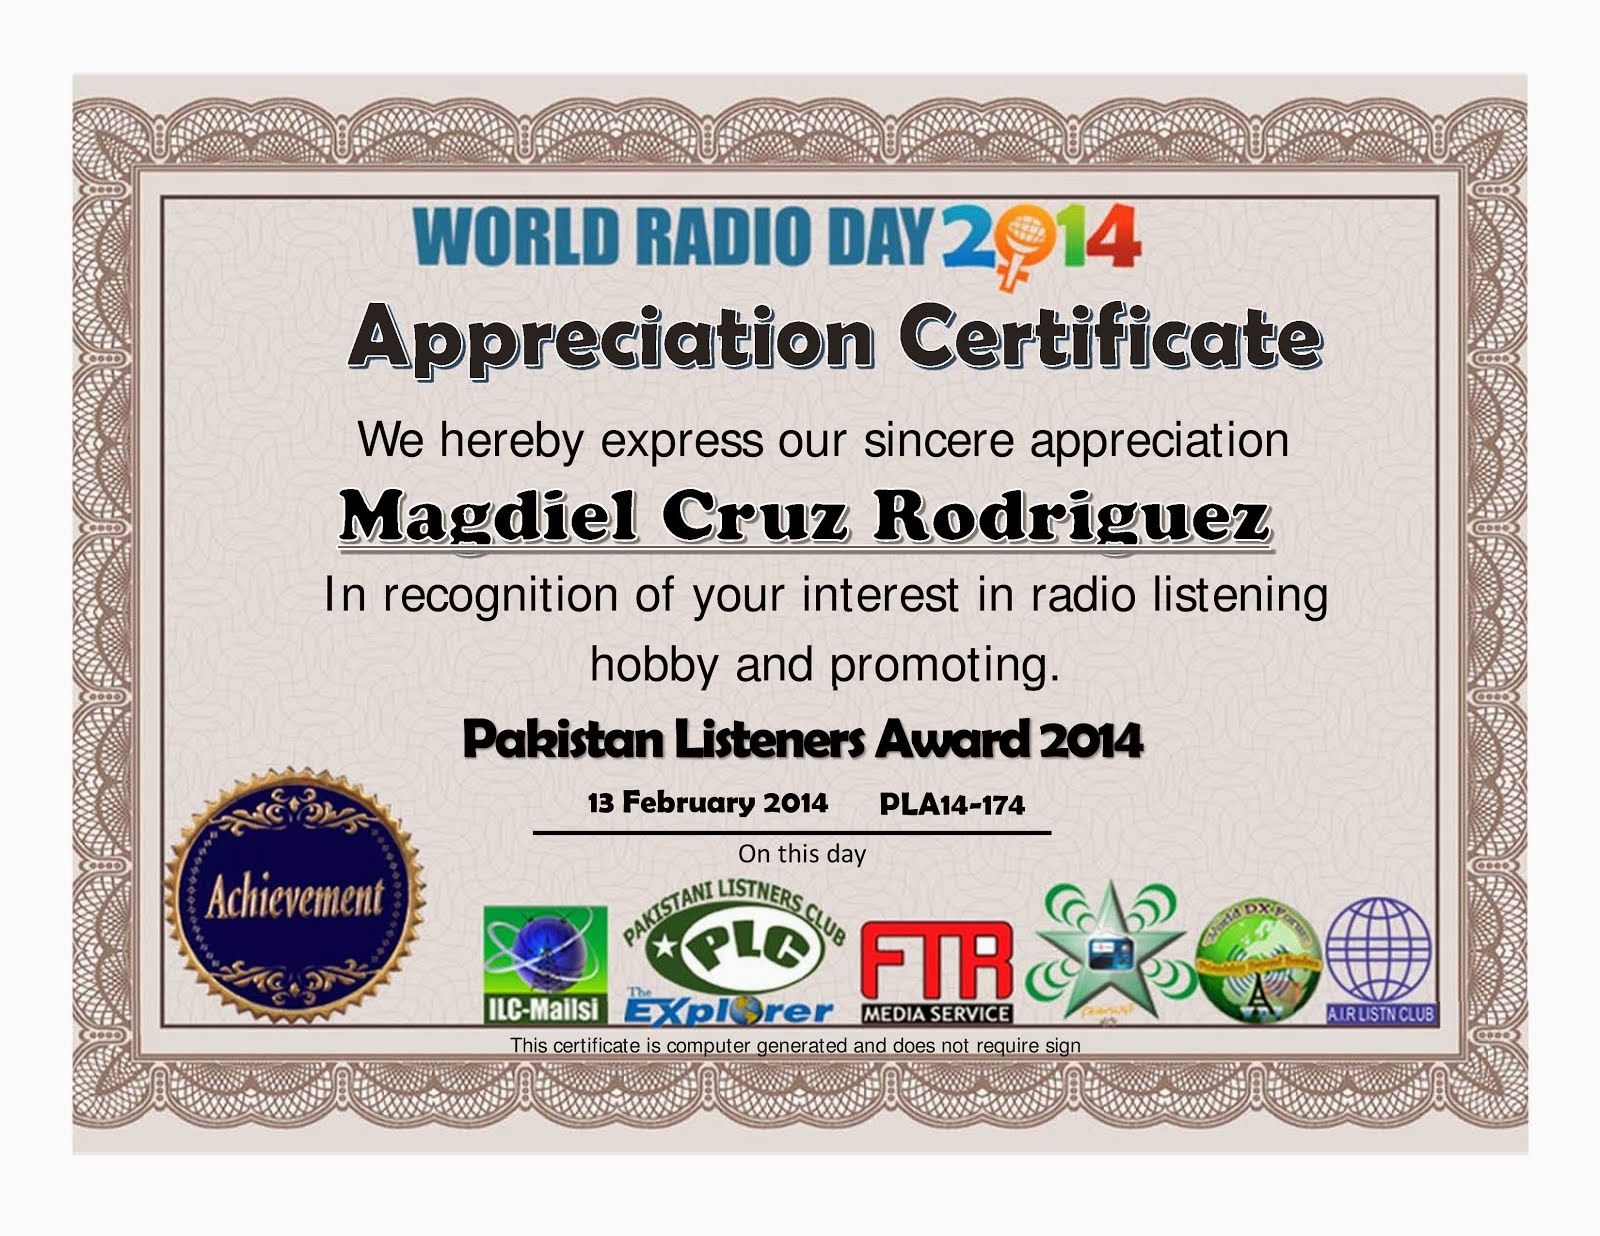 Appreciate Certificate WRD2014